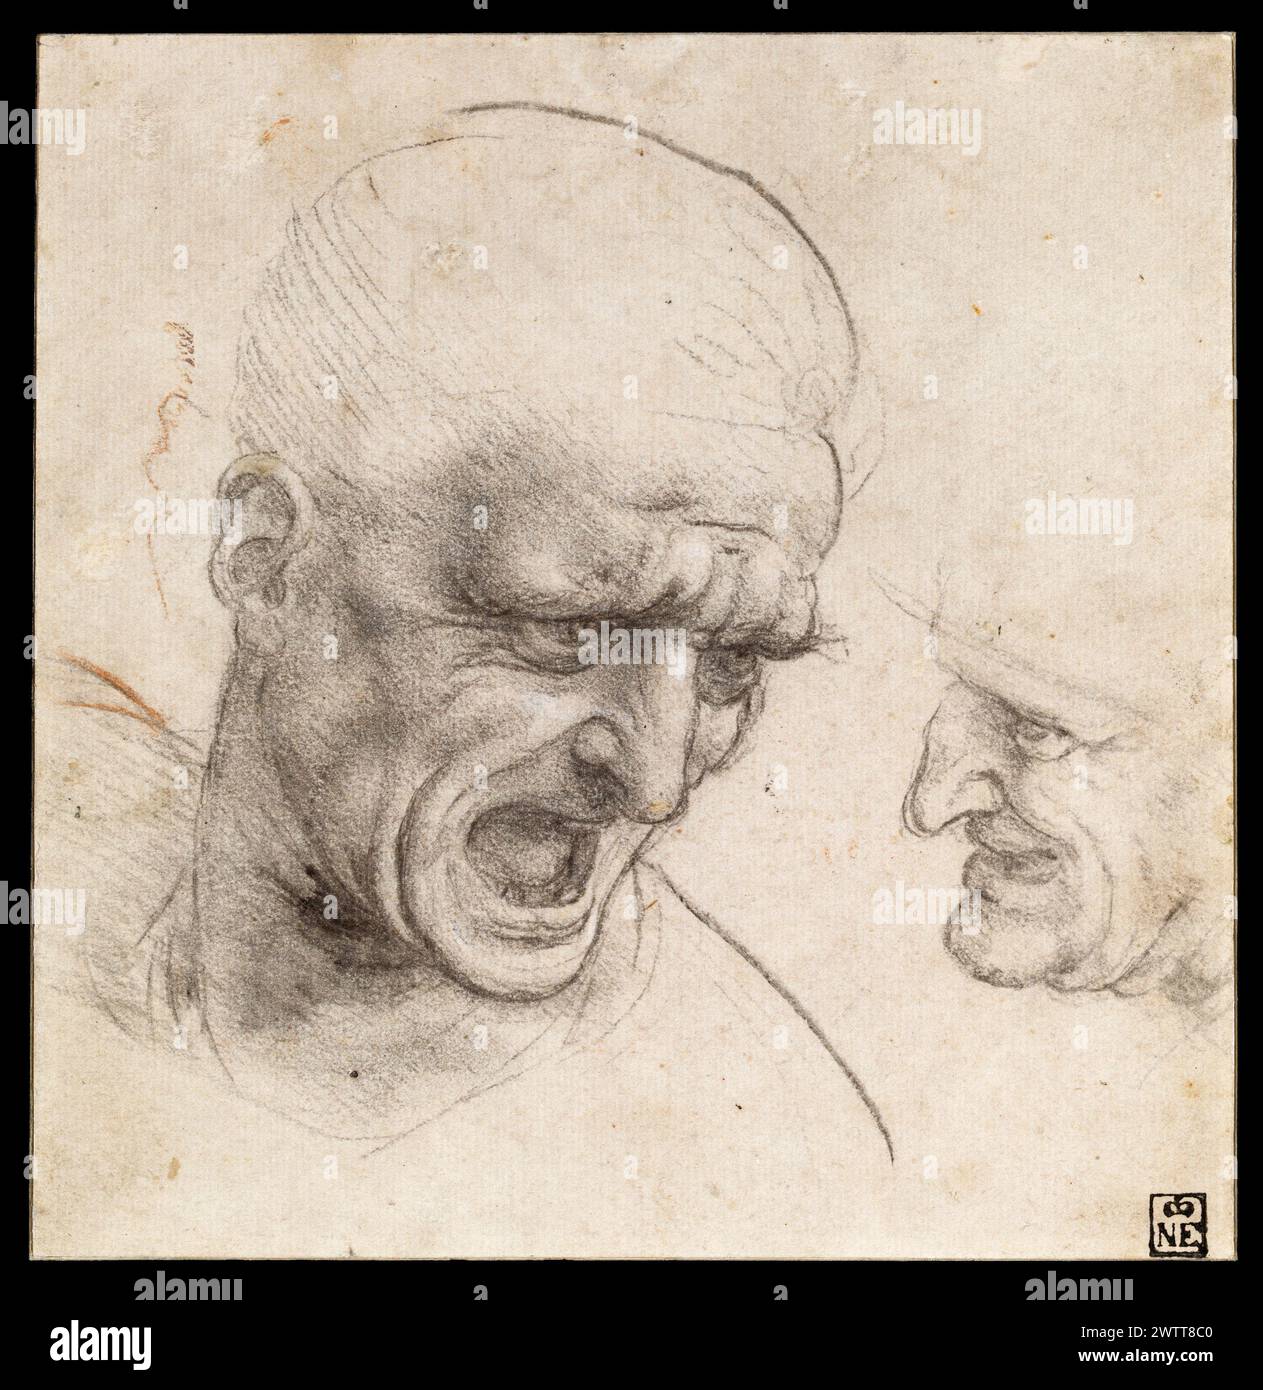 udy for The Battle of Anghiari (now lost), c. 1503, Museum of Fine Arts, Budapest Leonardo da Vinci Stock Photo